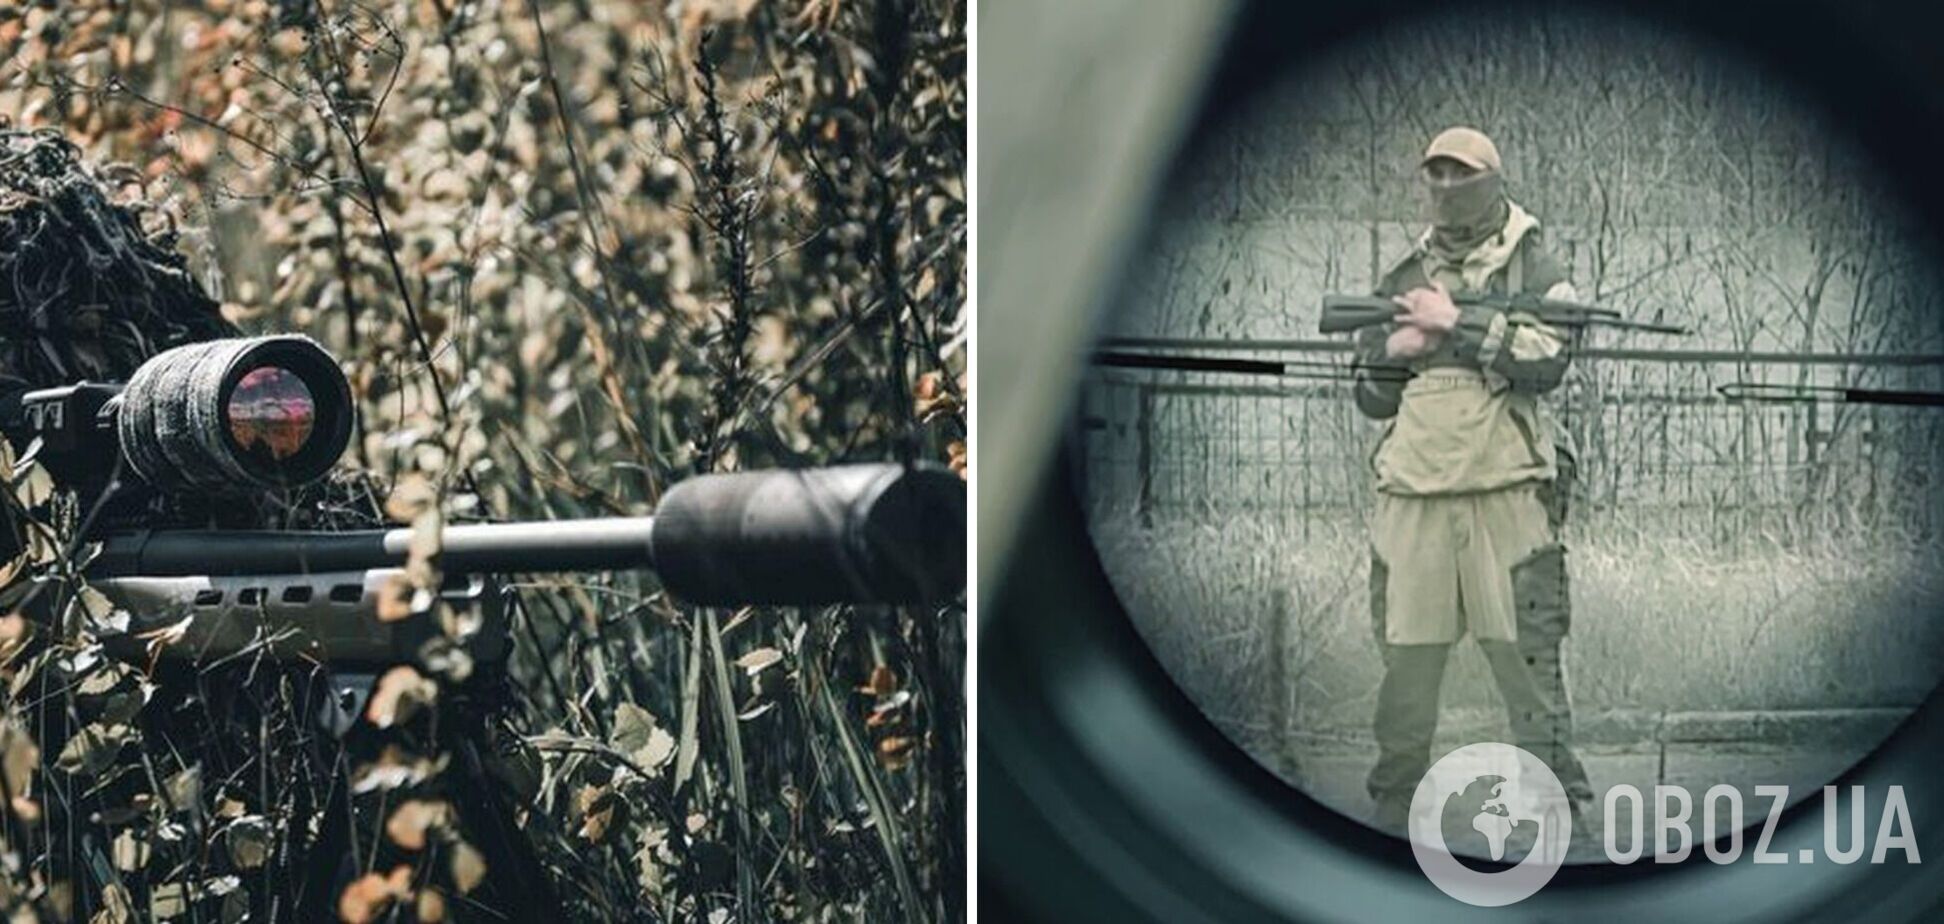 Український снайпер побив світовий рекорд із дальності стрільби, ліквідувавши окупанта на відстані 2710 м. Відео 